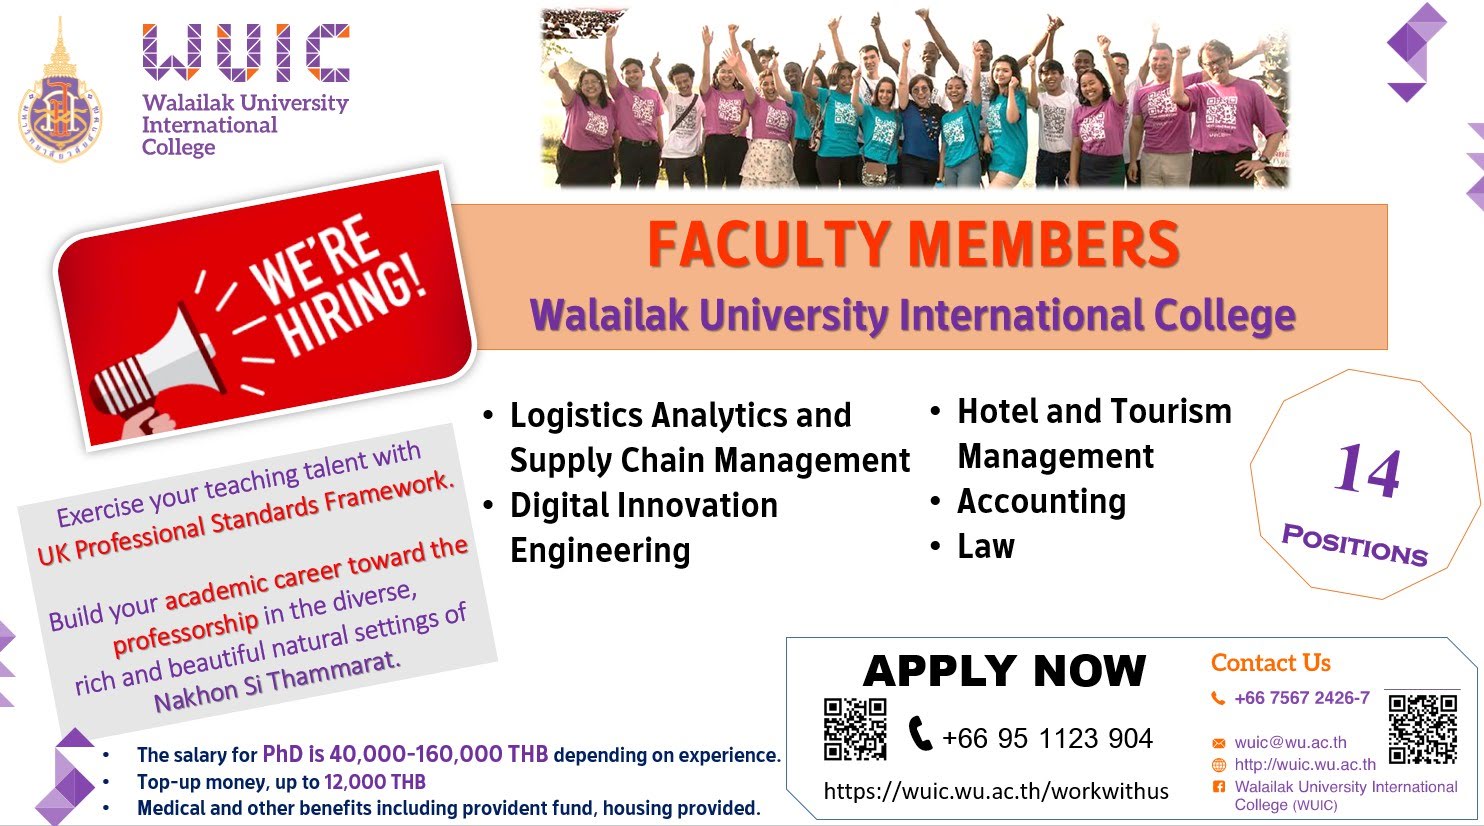 Walailak University International College is seeking faculty members